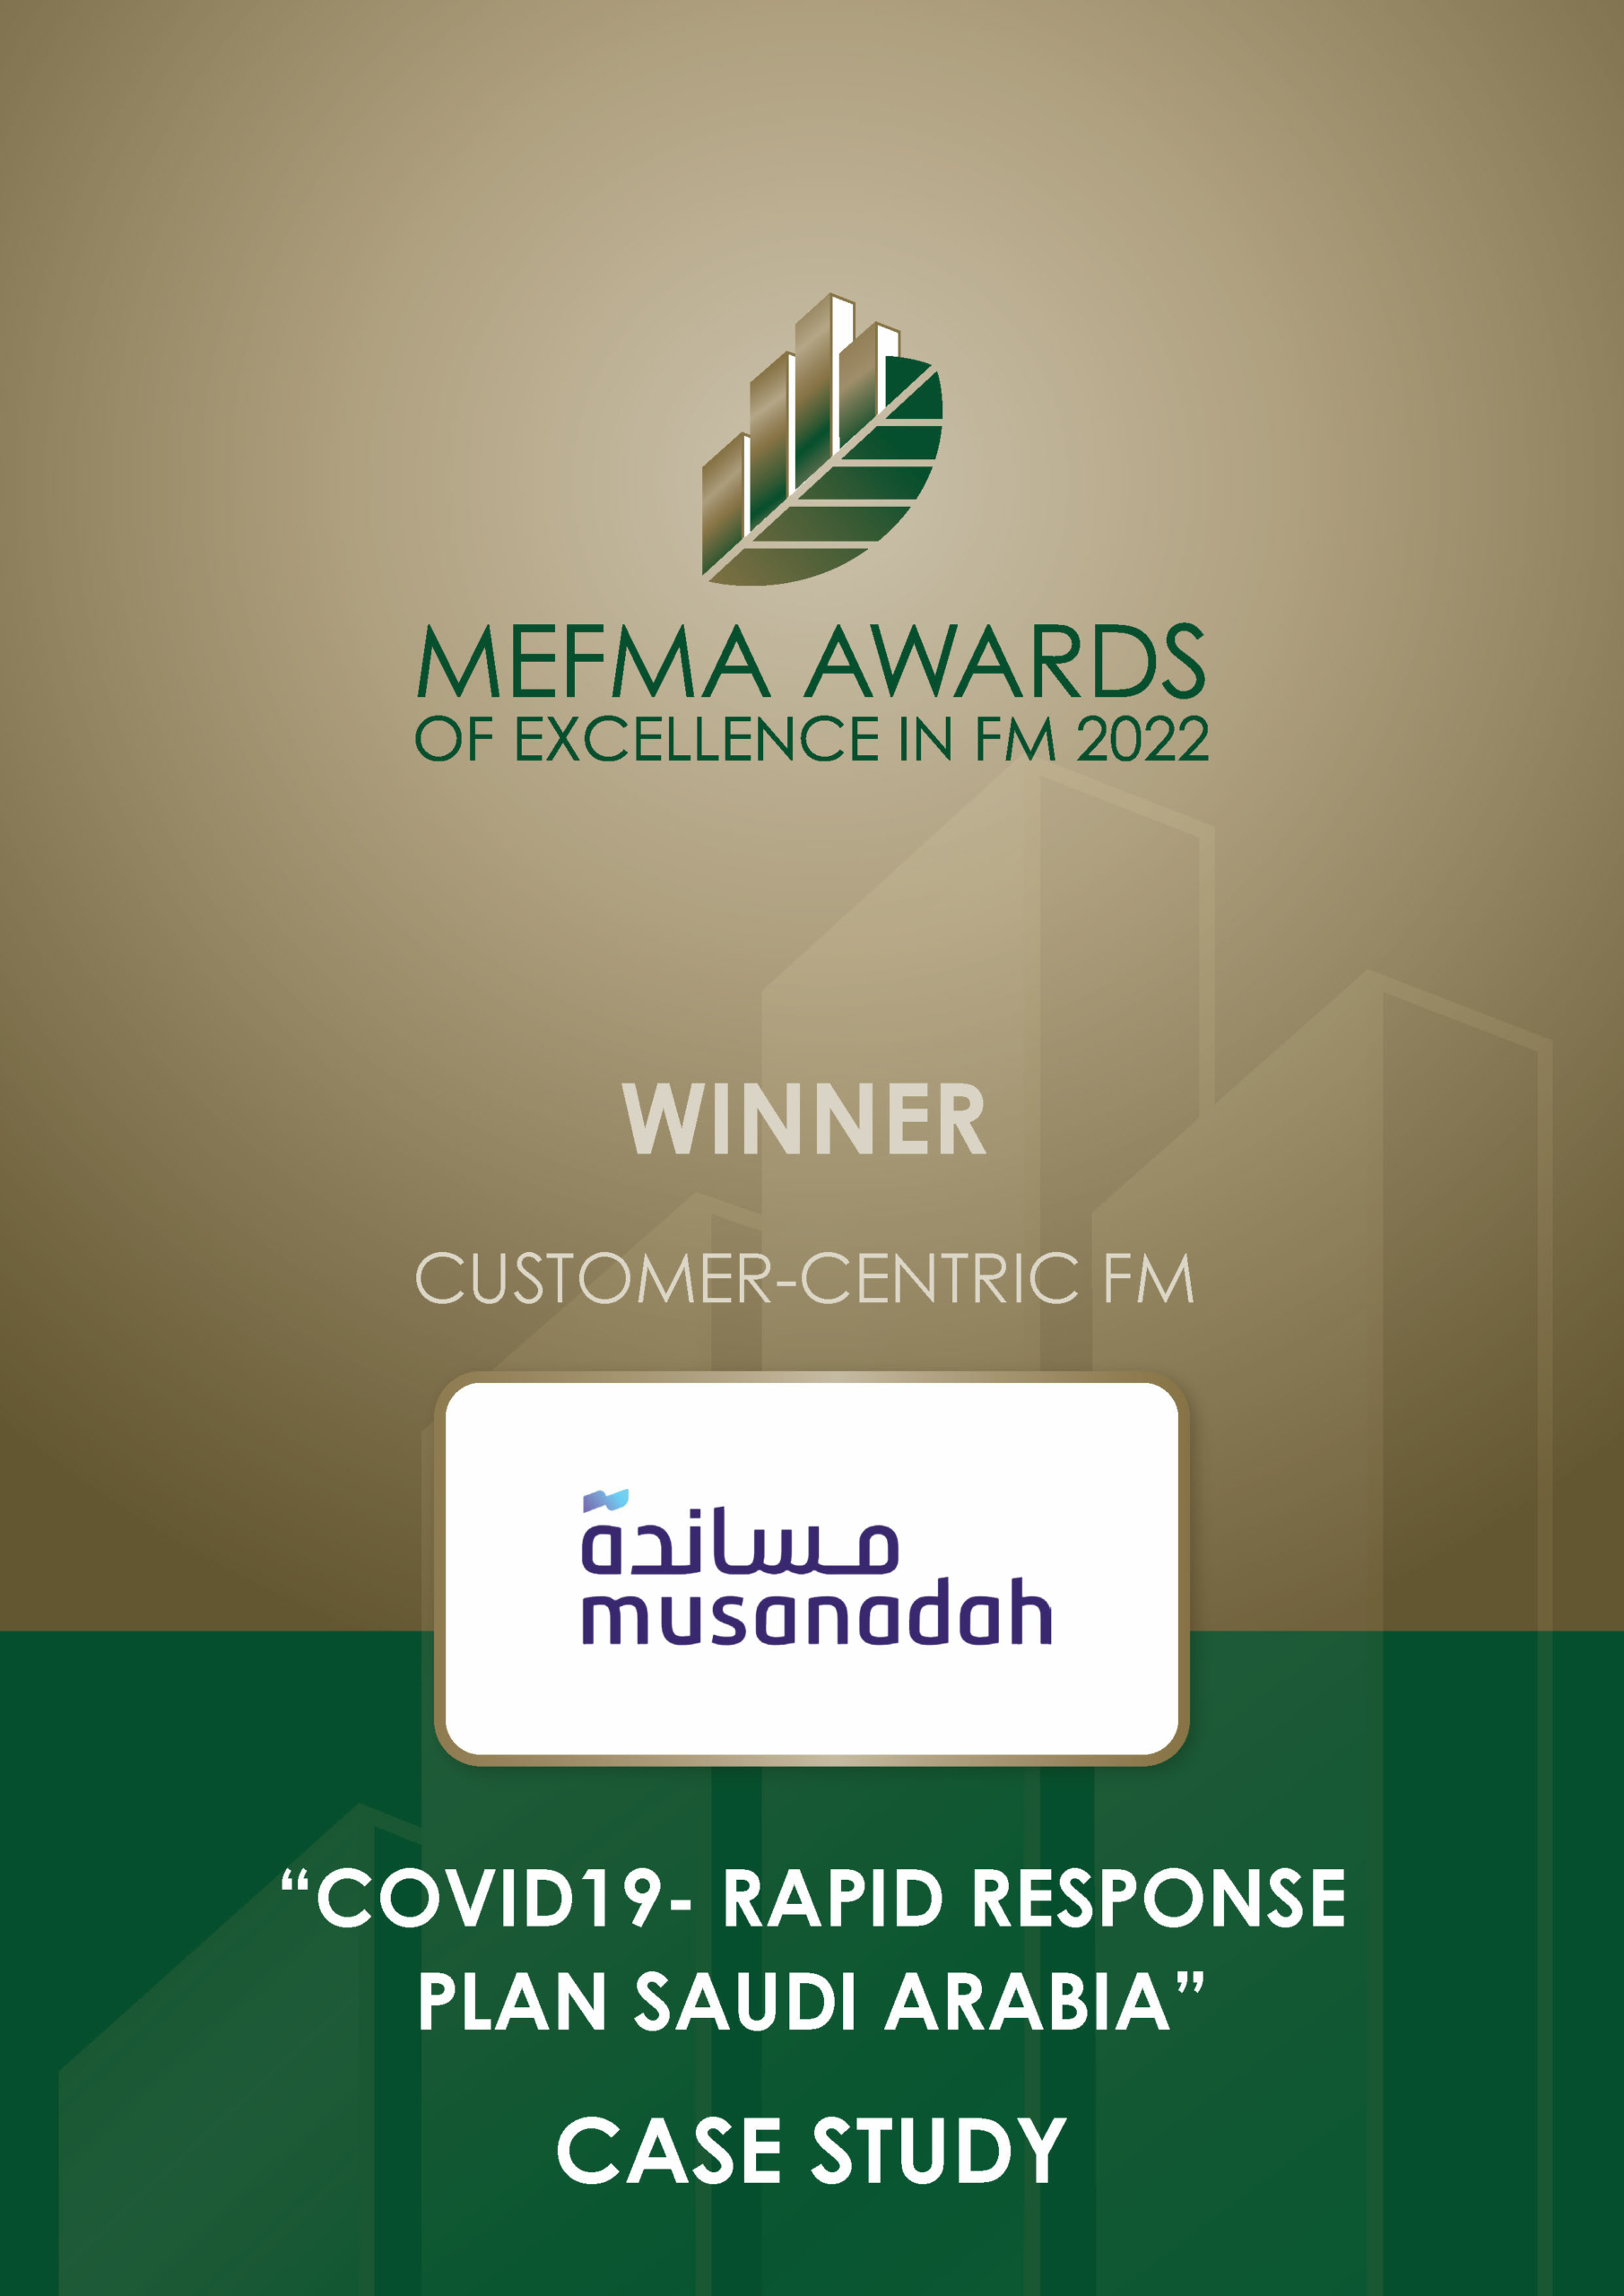 MEFMA awards 2022 winner Musanadah - customer centric FM